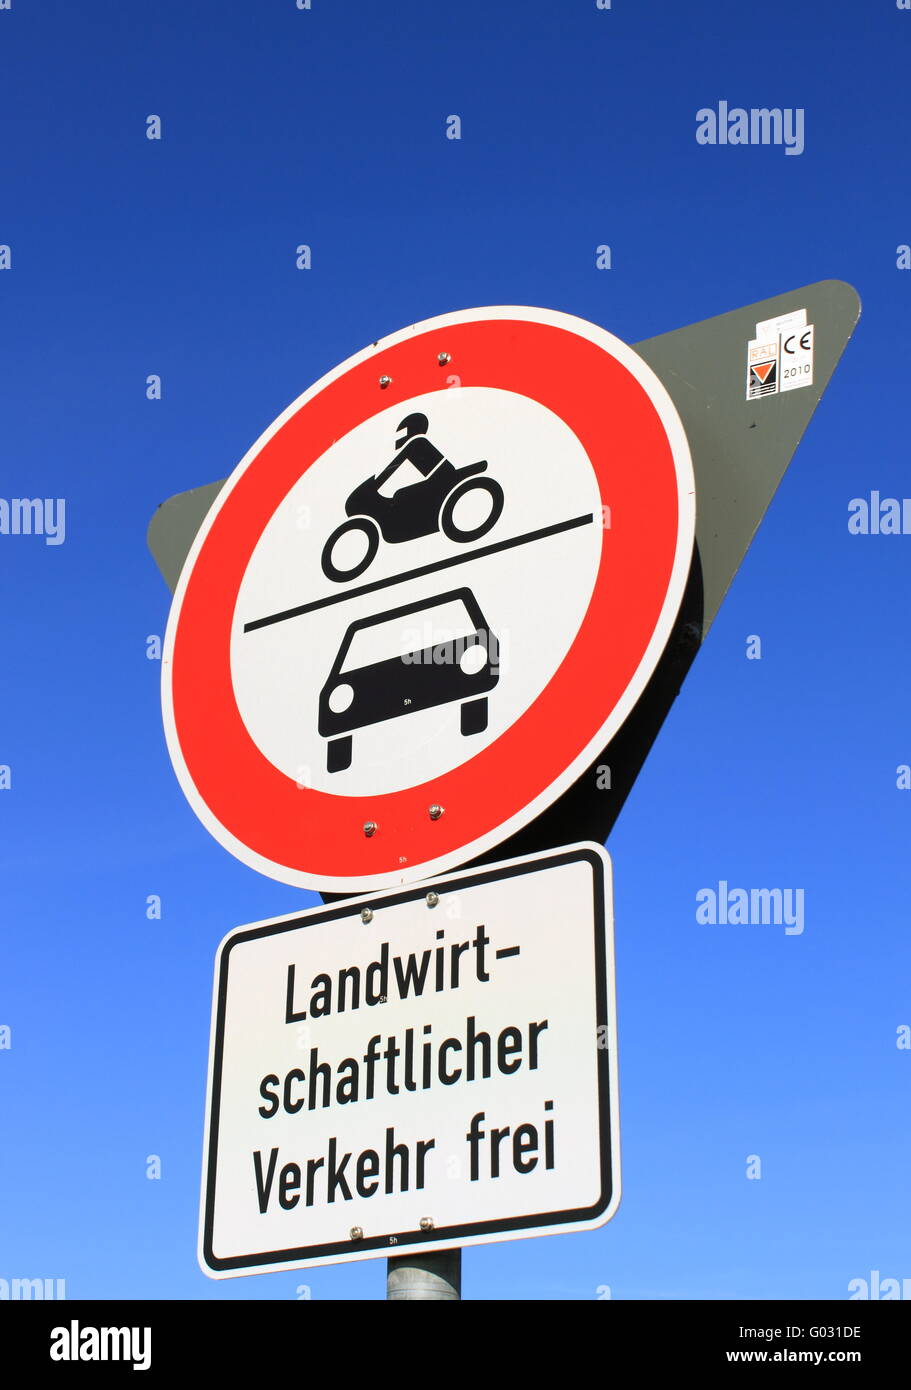 Durchfahrt verboten-Np through traffic Stock Photo